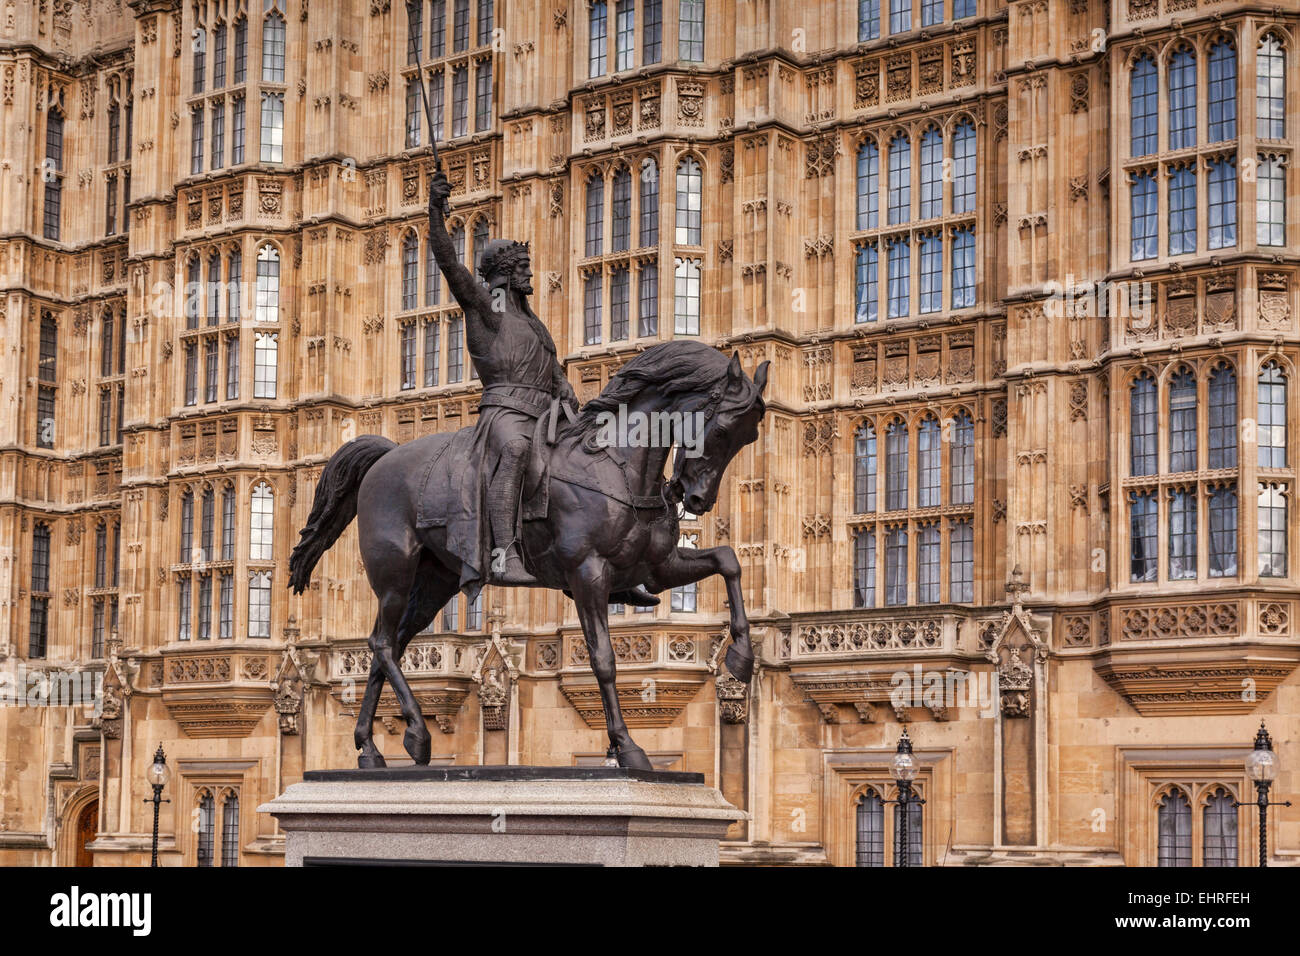 Statue du Roi Richard I, connu sous le nom de lion, au Palais de Westminster, Londres, Angleterre, Royaume-Uni. Banque D'Images